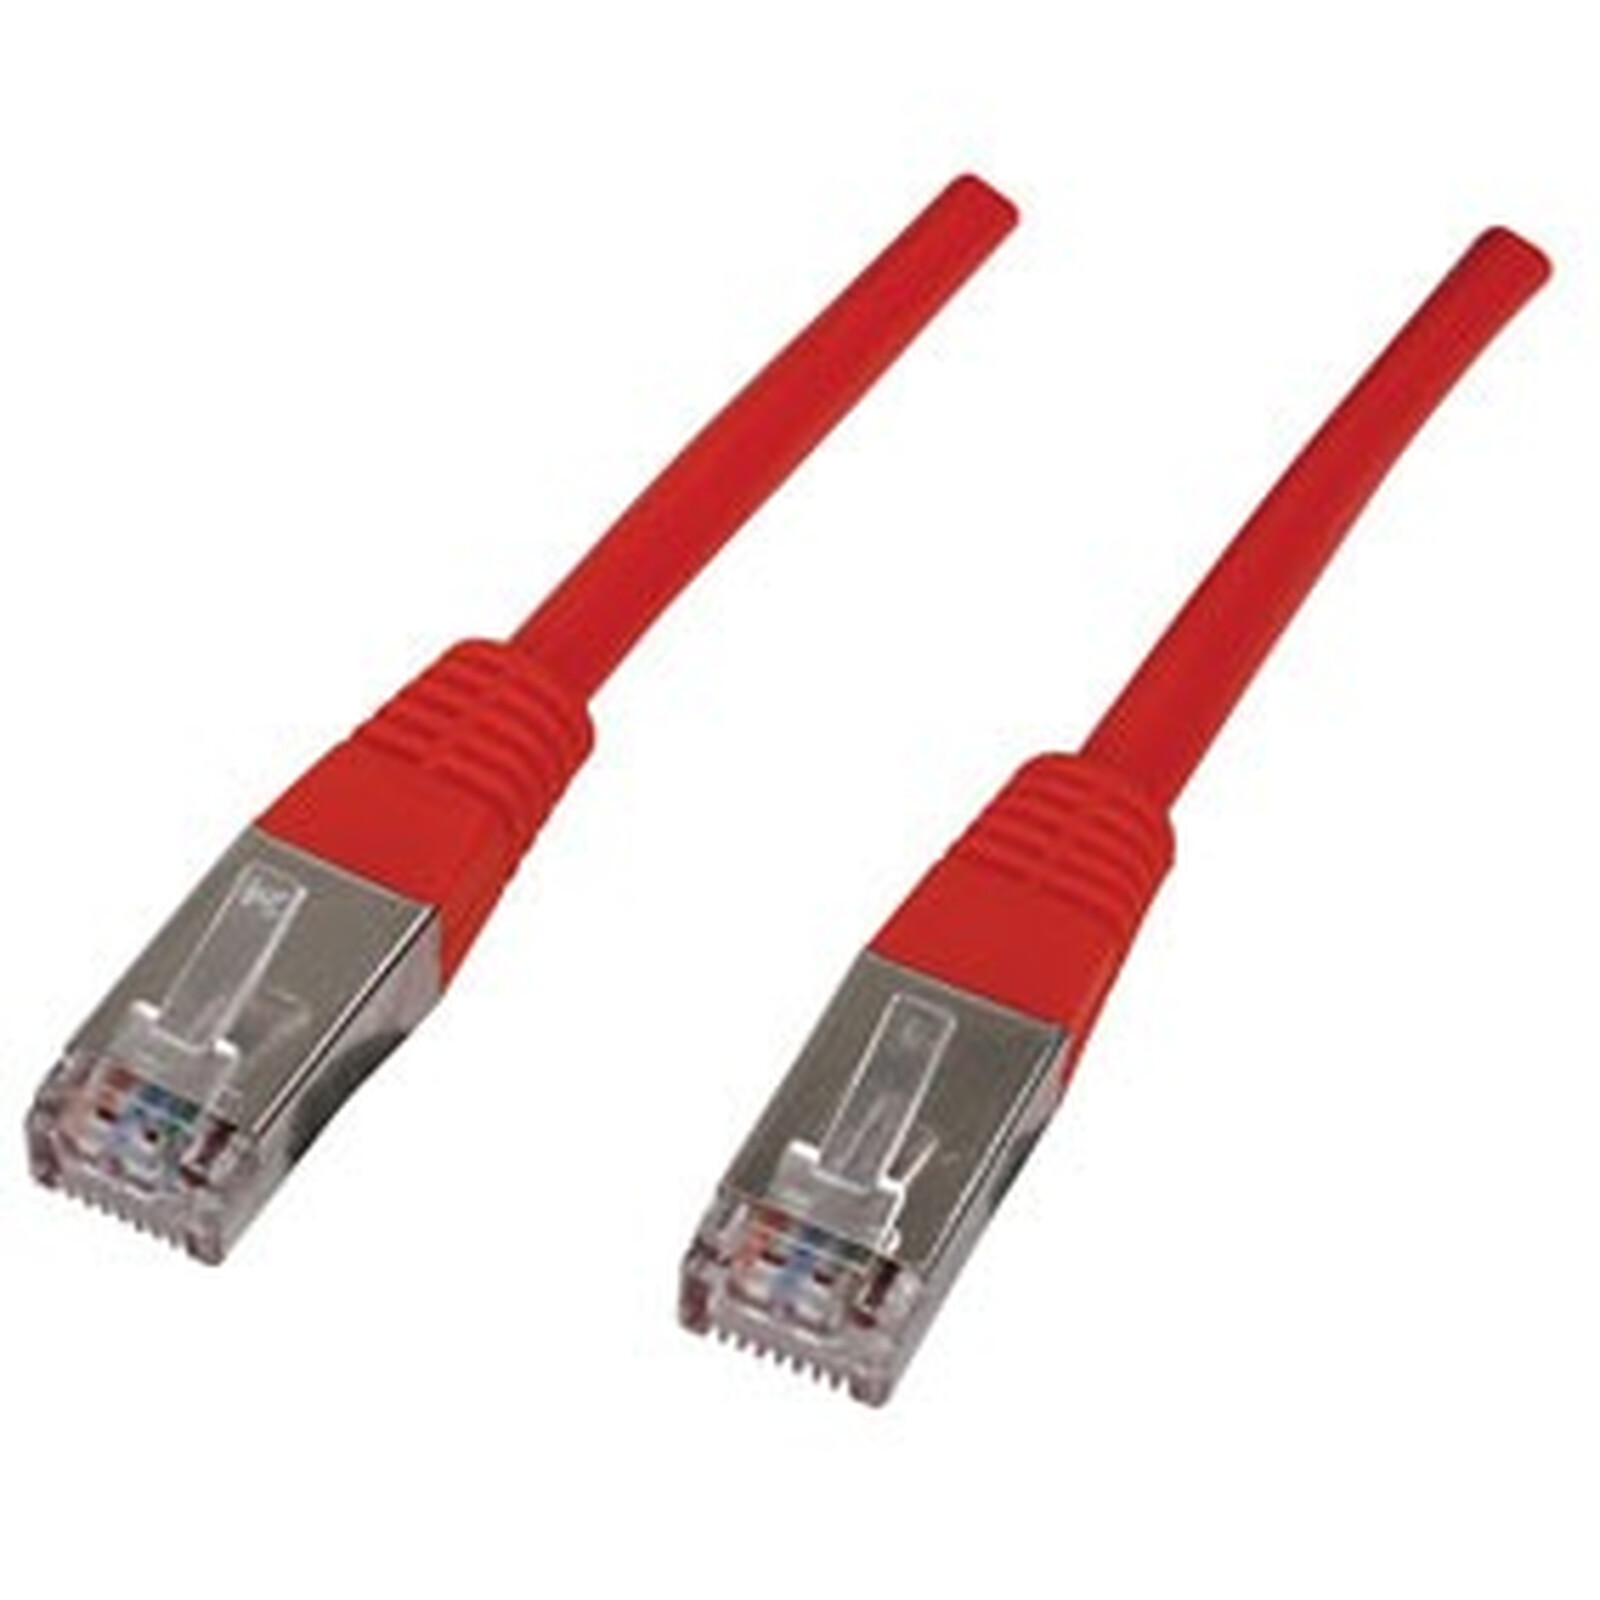 Cable RJ45 de categoría 6 F/UTP 3 m (beis) - Cable RJ45 - LDLC